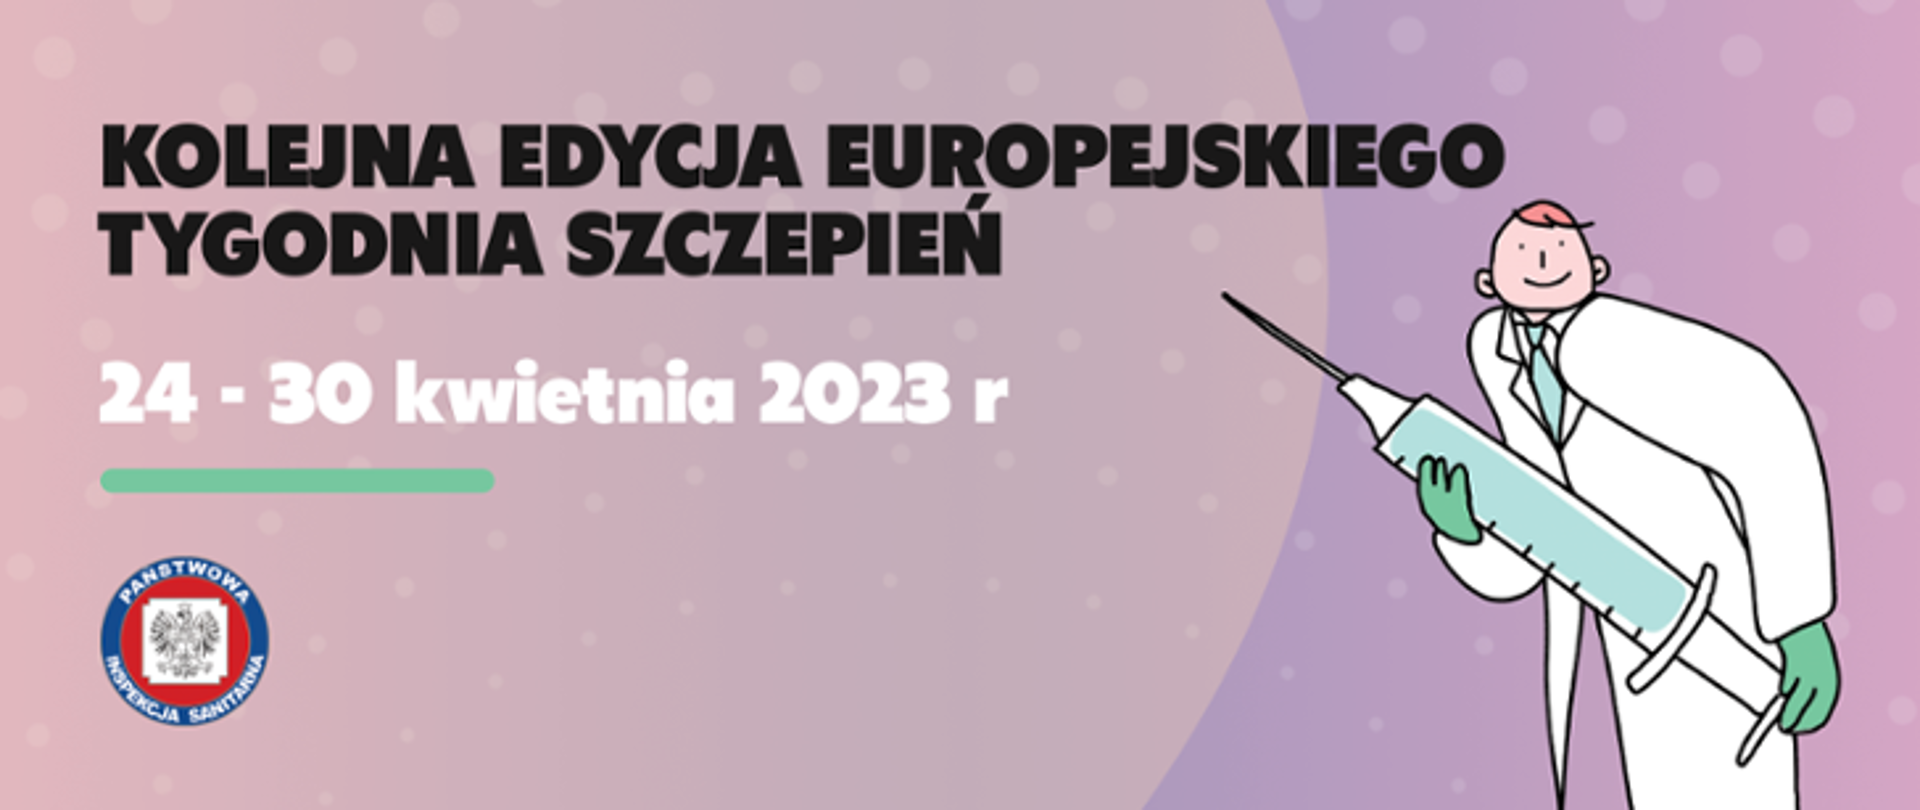 Baner Europejski Tydzień Szczepień ilustracja lekarze ze strzykawką